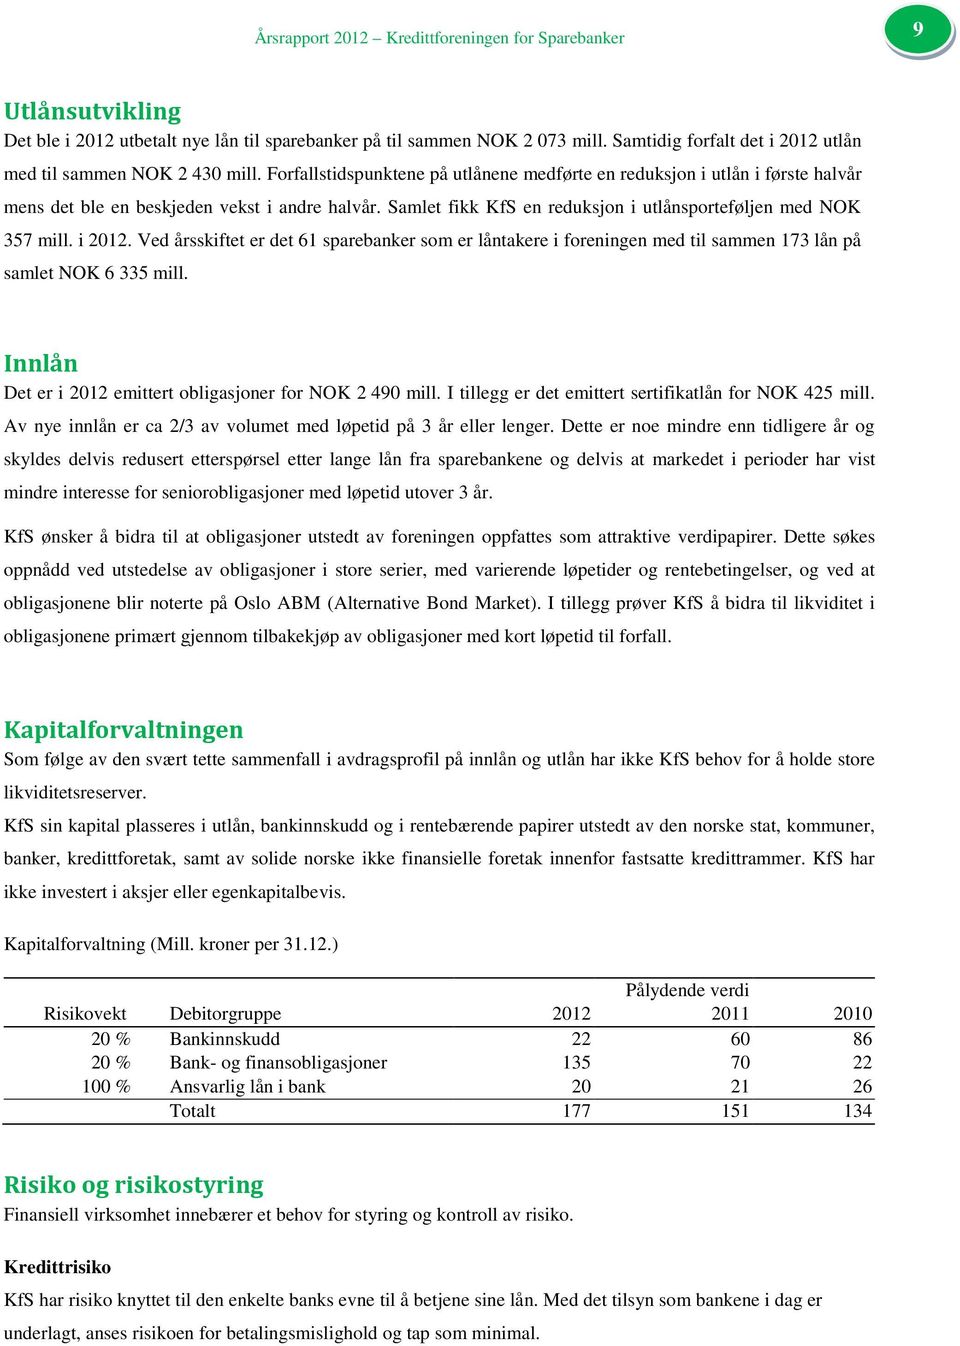 Samlet fikk KfS en reduksjon i utlånsporteføljen med NOK 357 mill. i 2012. Ved årsskiftet er det 61 sparebanker som er låntakere i foreningen med til sammen 173 lån på samlet NOK 6 335 mill.